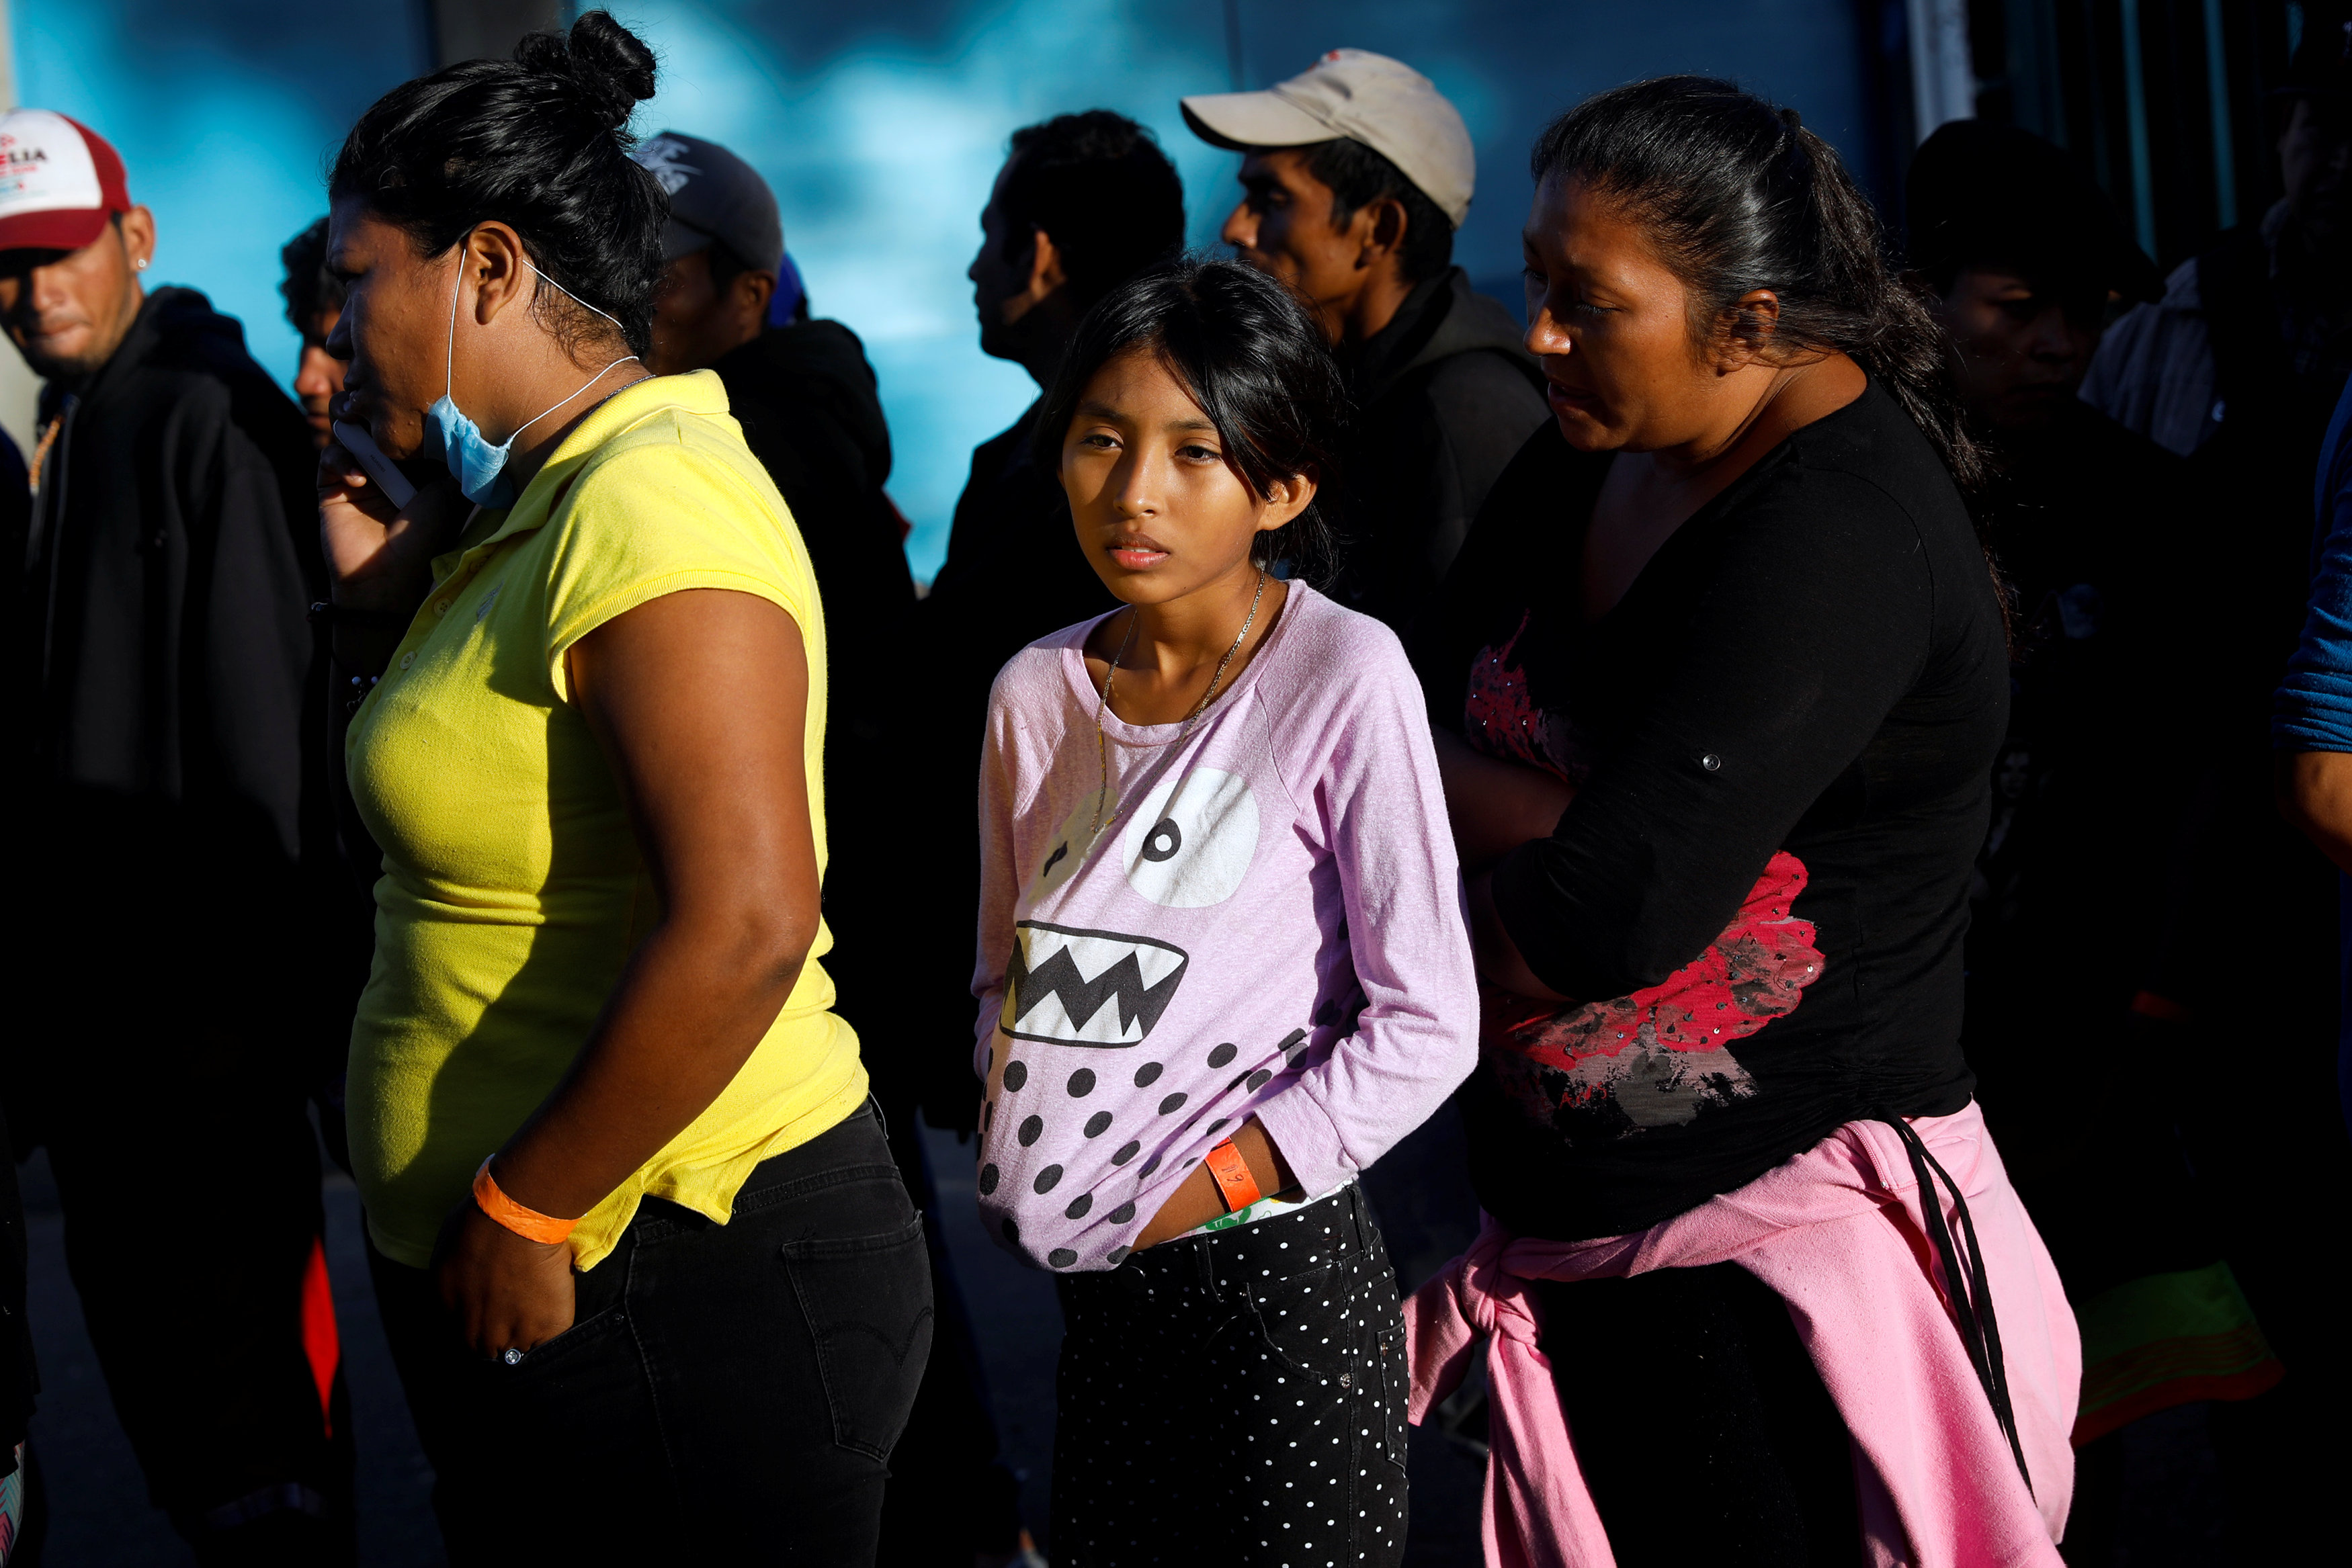 آلاف المهاجرون فى مخيم للايواء بالمكسيك (4)